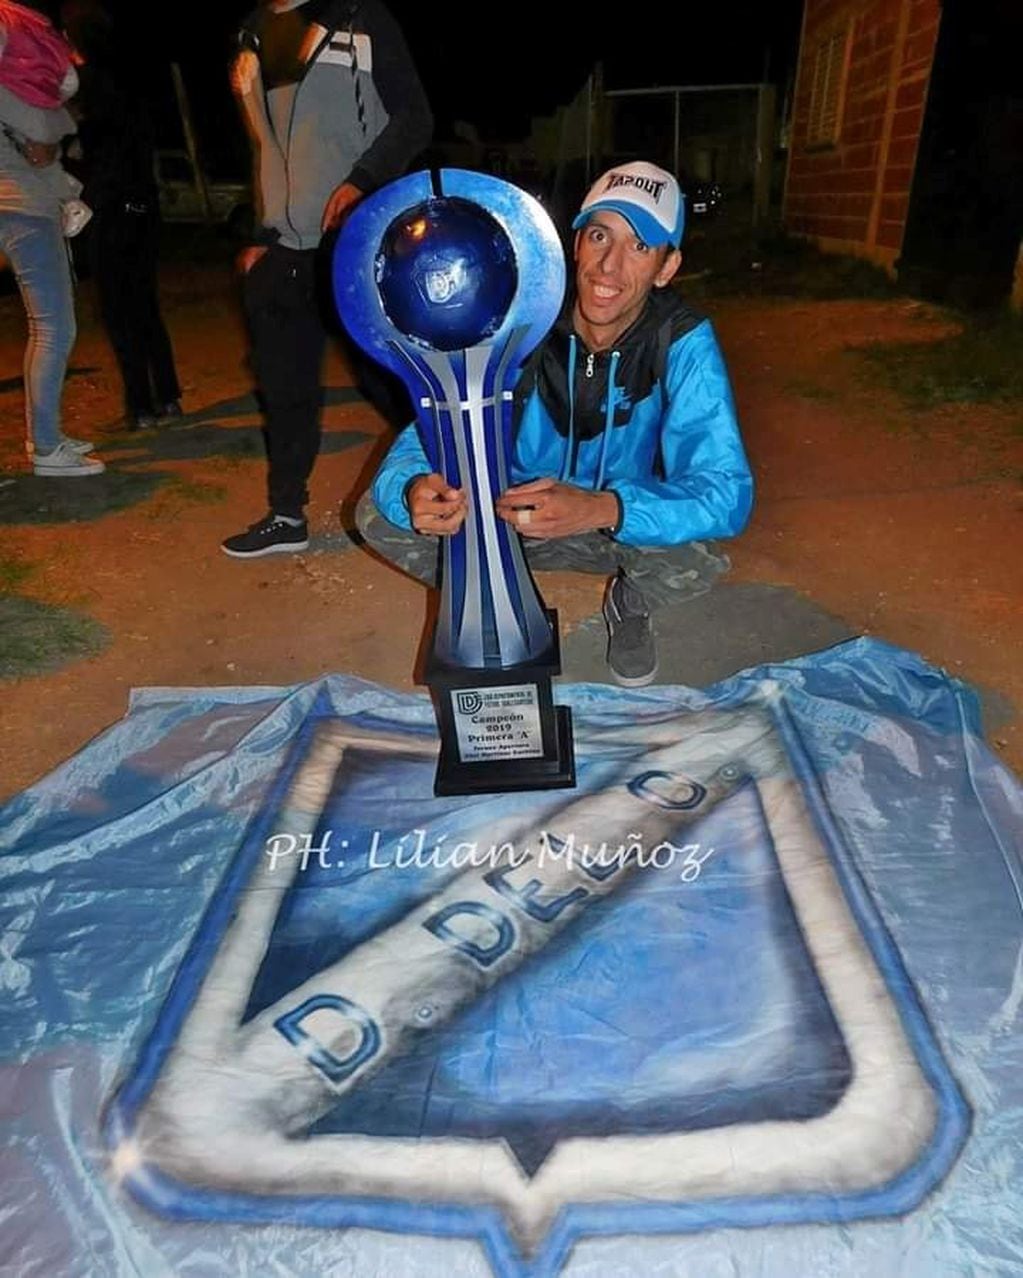 Toto con la Copa del Club de sus amores
Crédito: Facebook